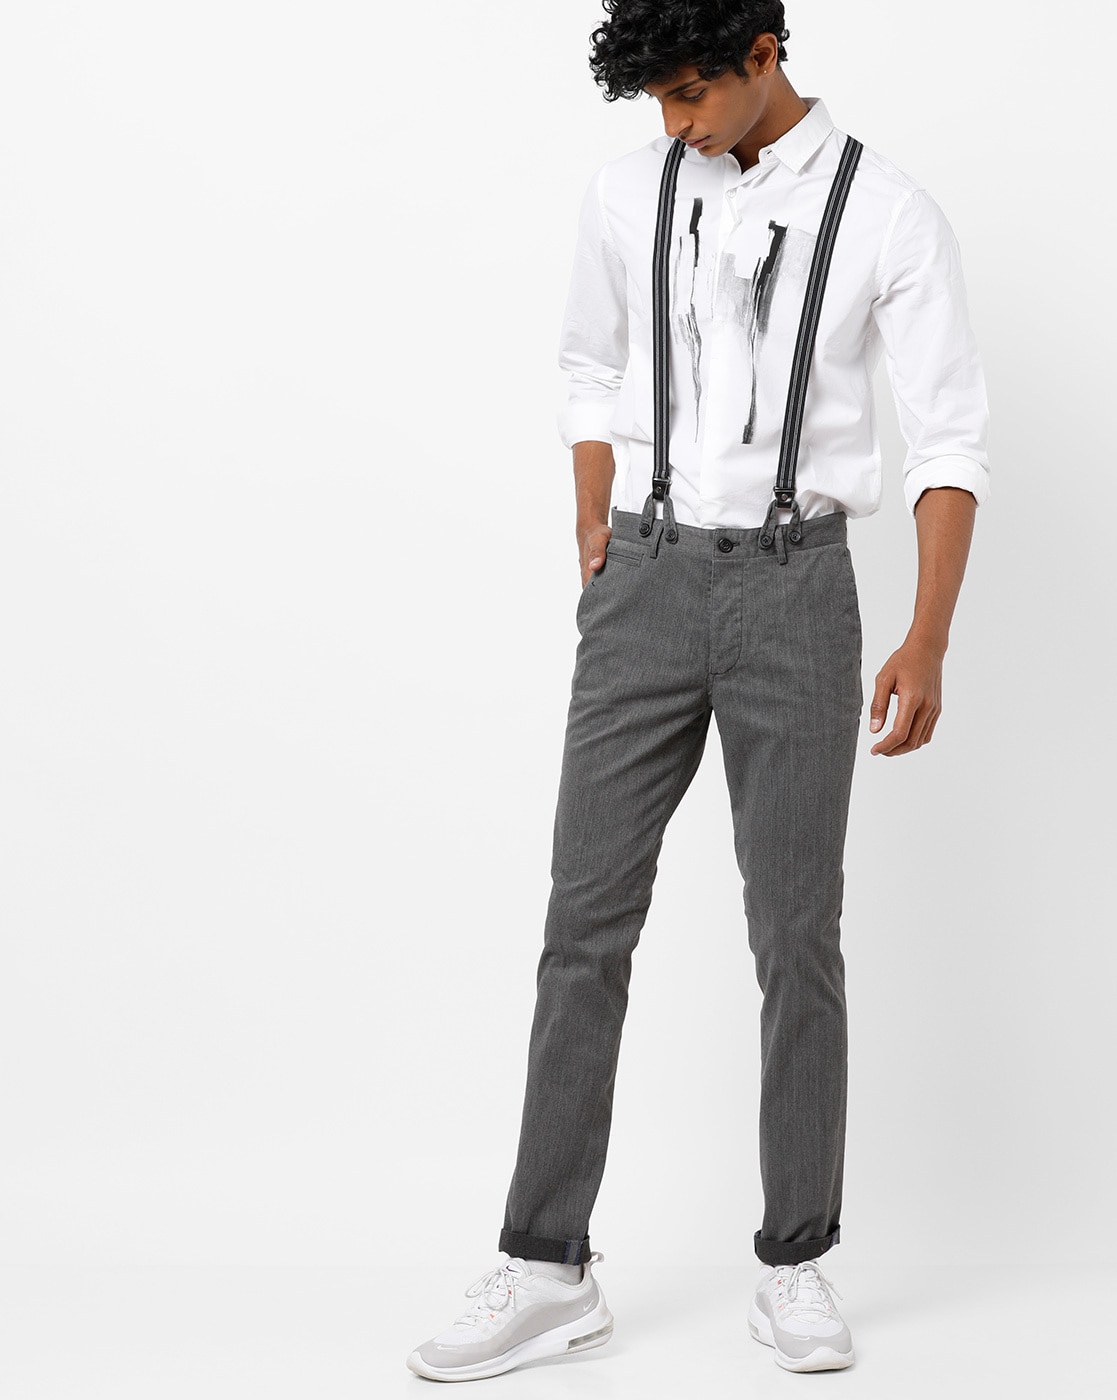 Buy Fascigirl Men Suspender Pant Suspender Adjustable 6 Strong Clip Y Back  Suspender for Work Pant at Amazonin